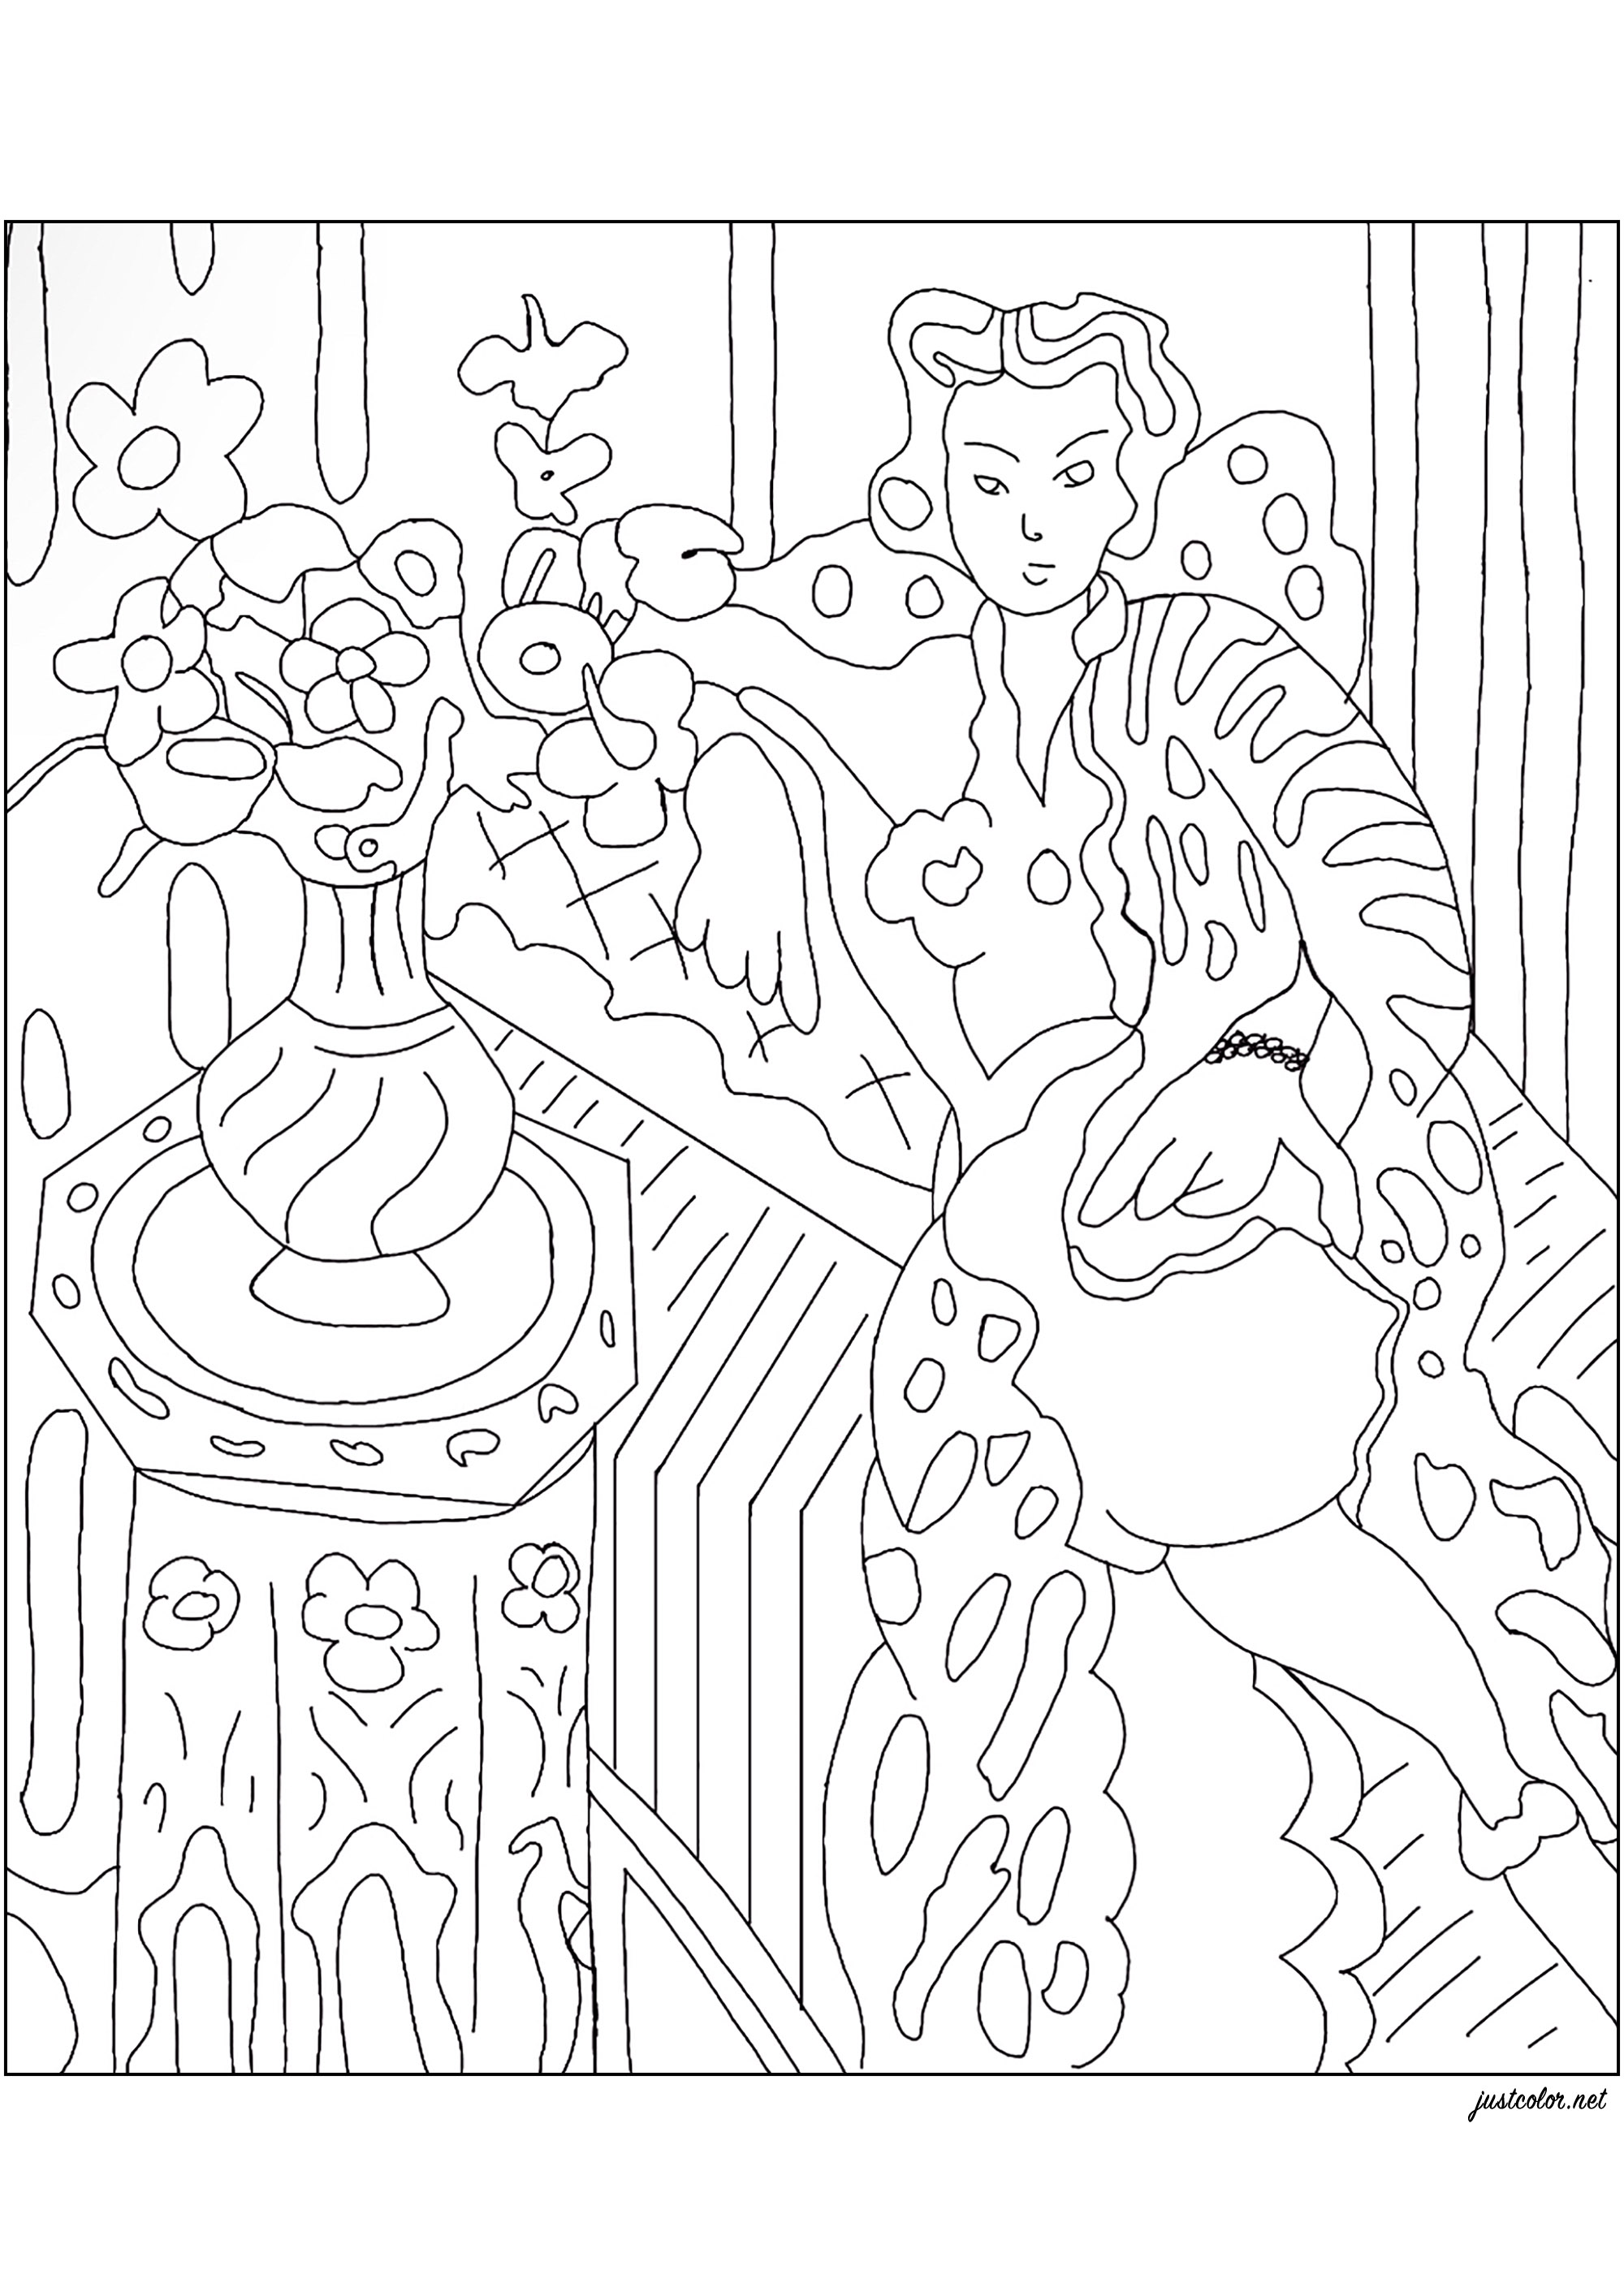 Coloreado de 'Odalisque a la robe persane jaune' (1937) de Henri Matisse. En este cuadro, Matisse utiliza a su modelo familiar, Hélène Galtzine, para representar una figura ataviada con un vestido persa amarillo, rodeada de objetos personales del pintor, creando un interior onírico. Inspirándose en sus viajes por el Magreb, Matisse retoma el motivo de la odalisca, heredado de los desnudos orientalistas, modernizándolos y transformándolos en arquetipos de la mujer moderna de entreguerras, Artista : Jade F